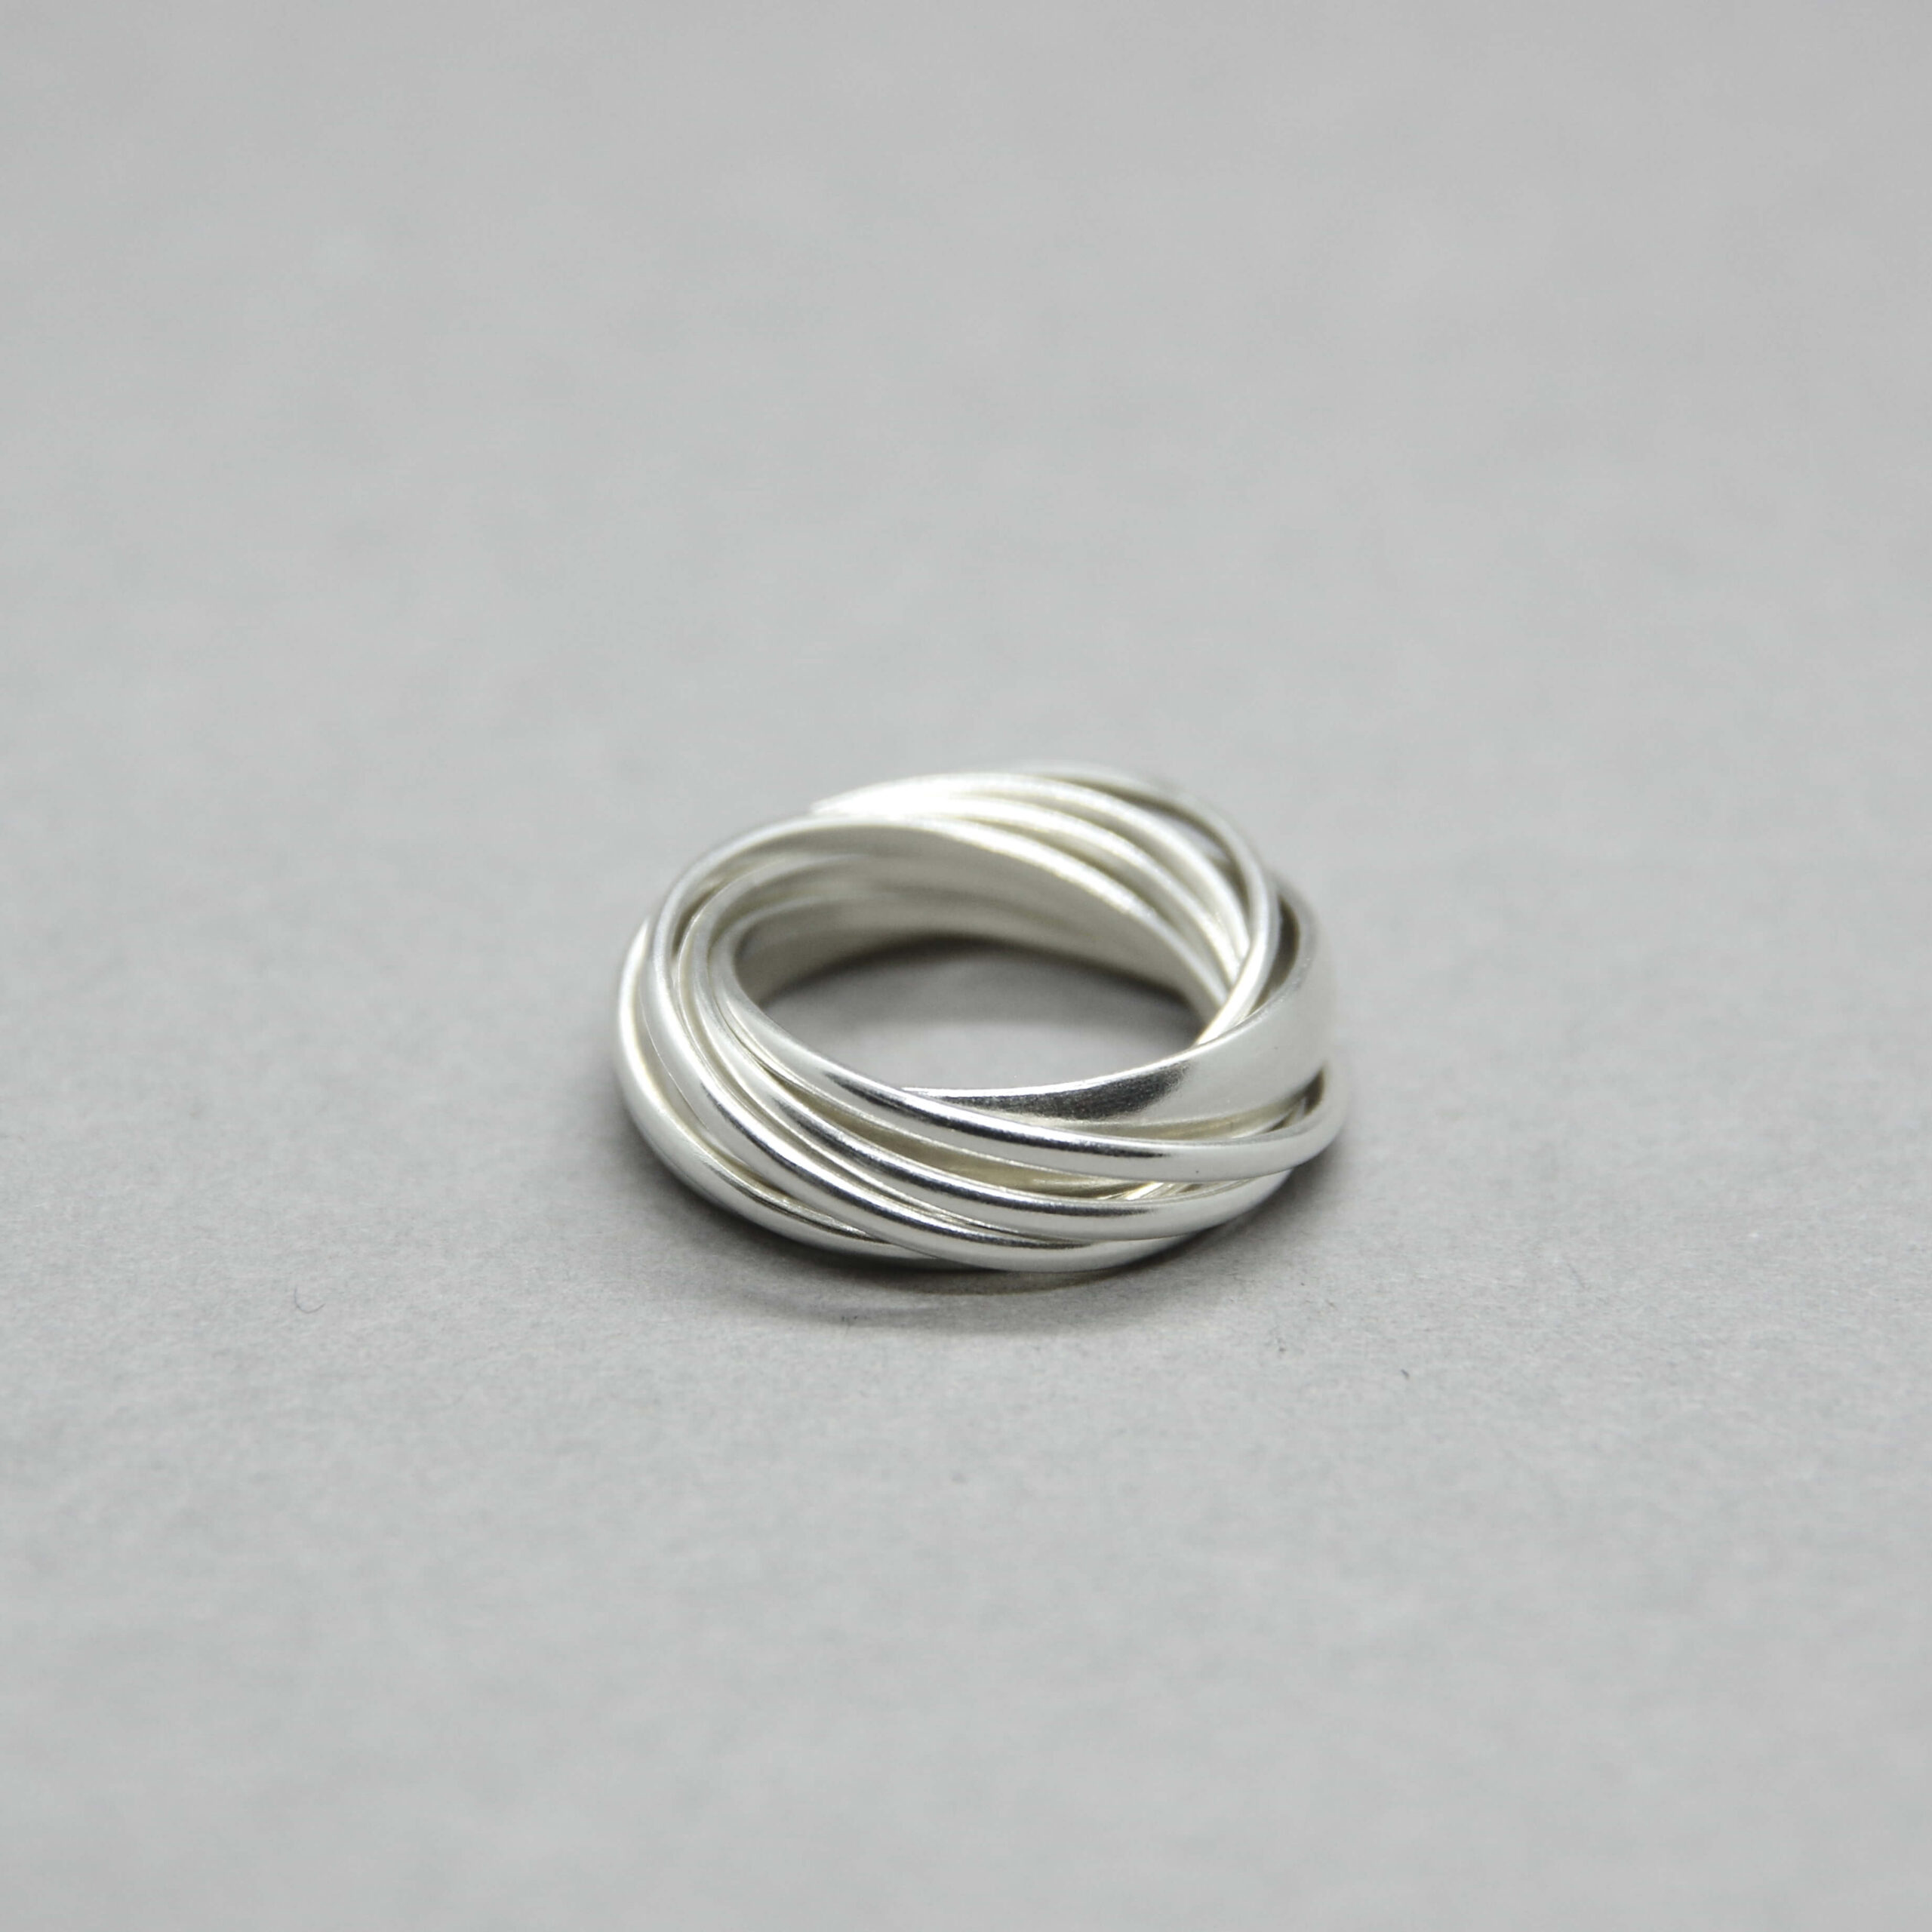 7 žiedai kartu, sidabras, sidabriniai žiedai, galerija terra recogntia